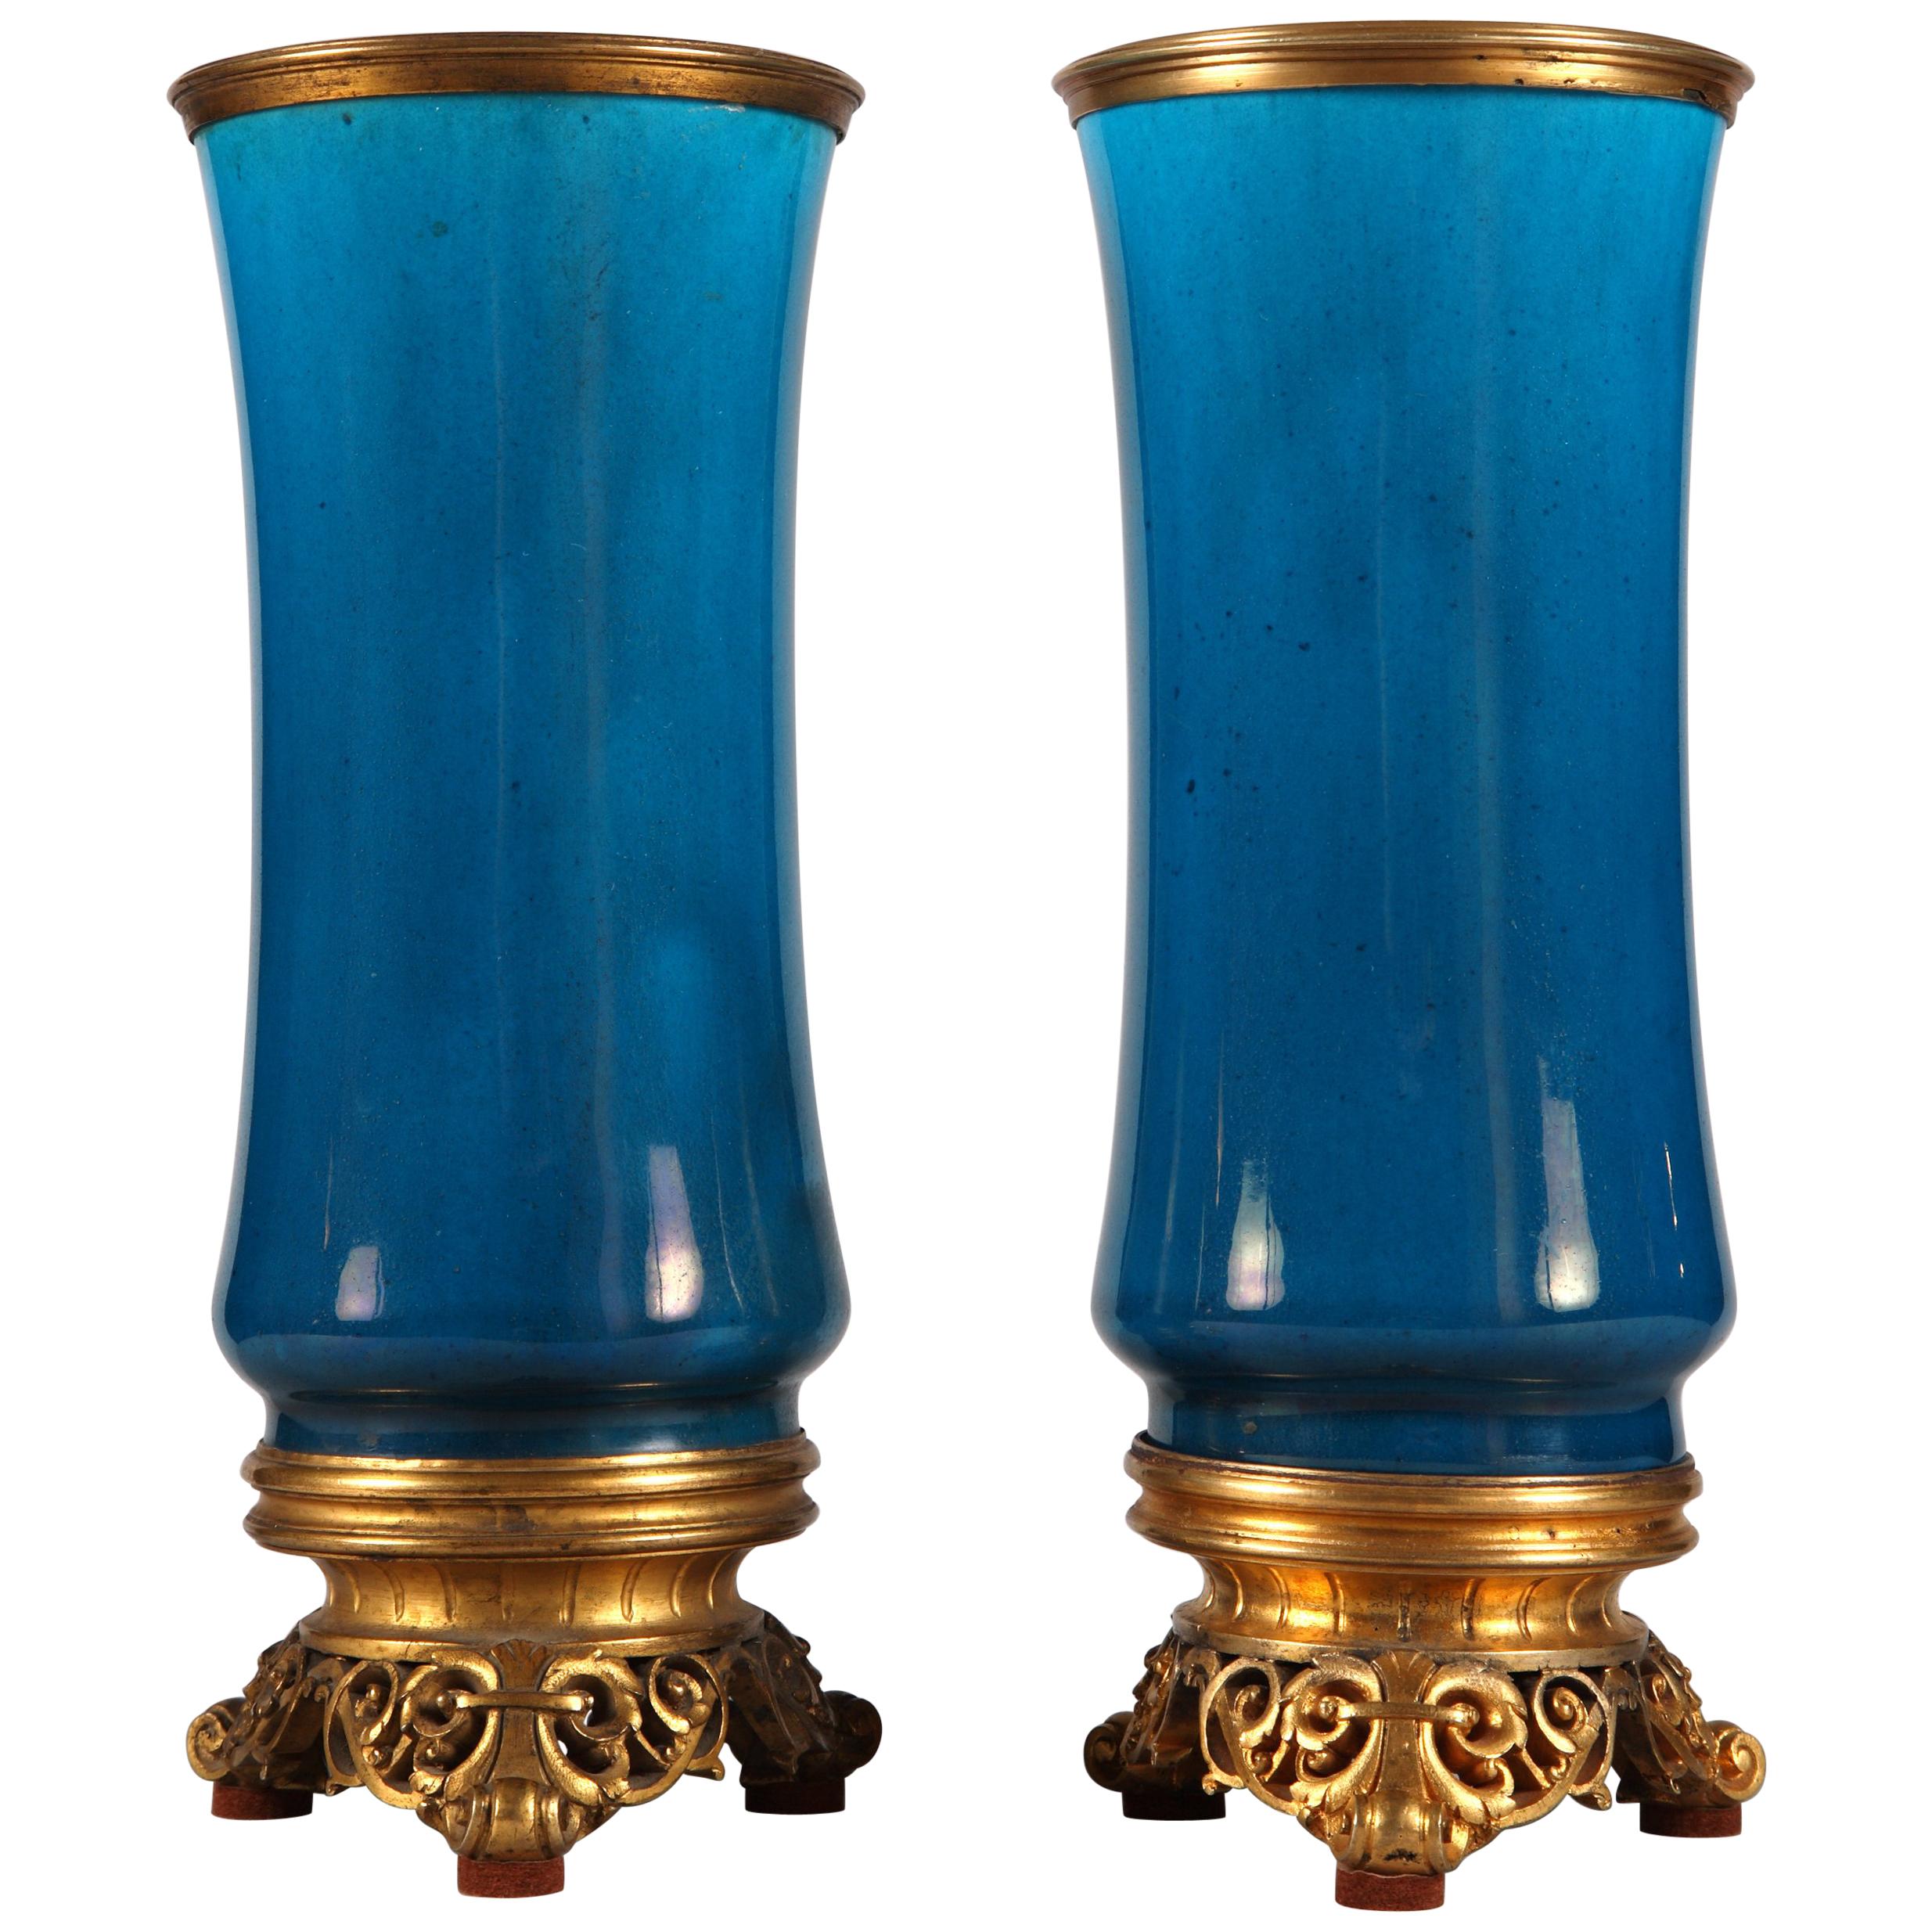 Fine Pair of Vases by C. Rudhardt